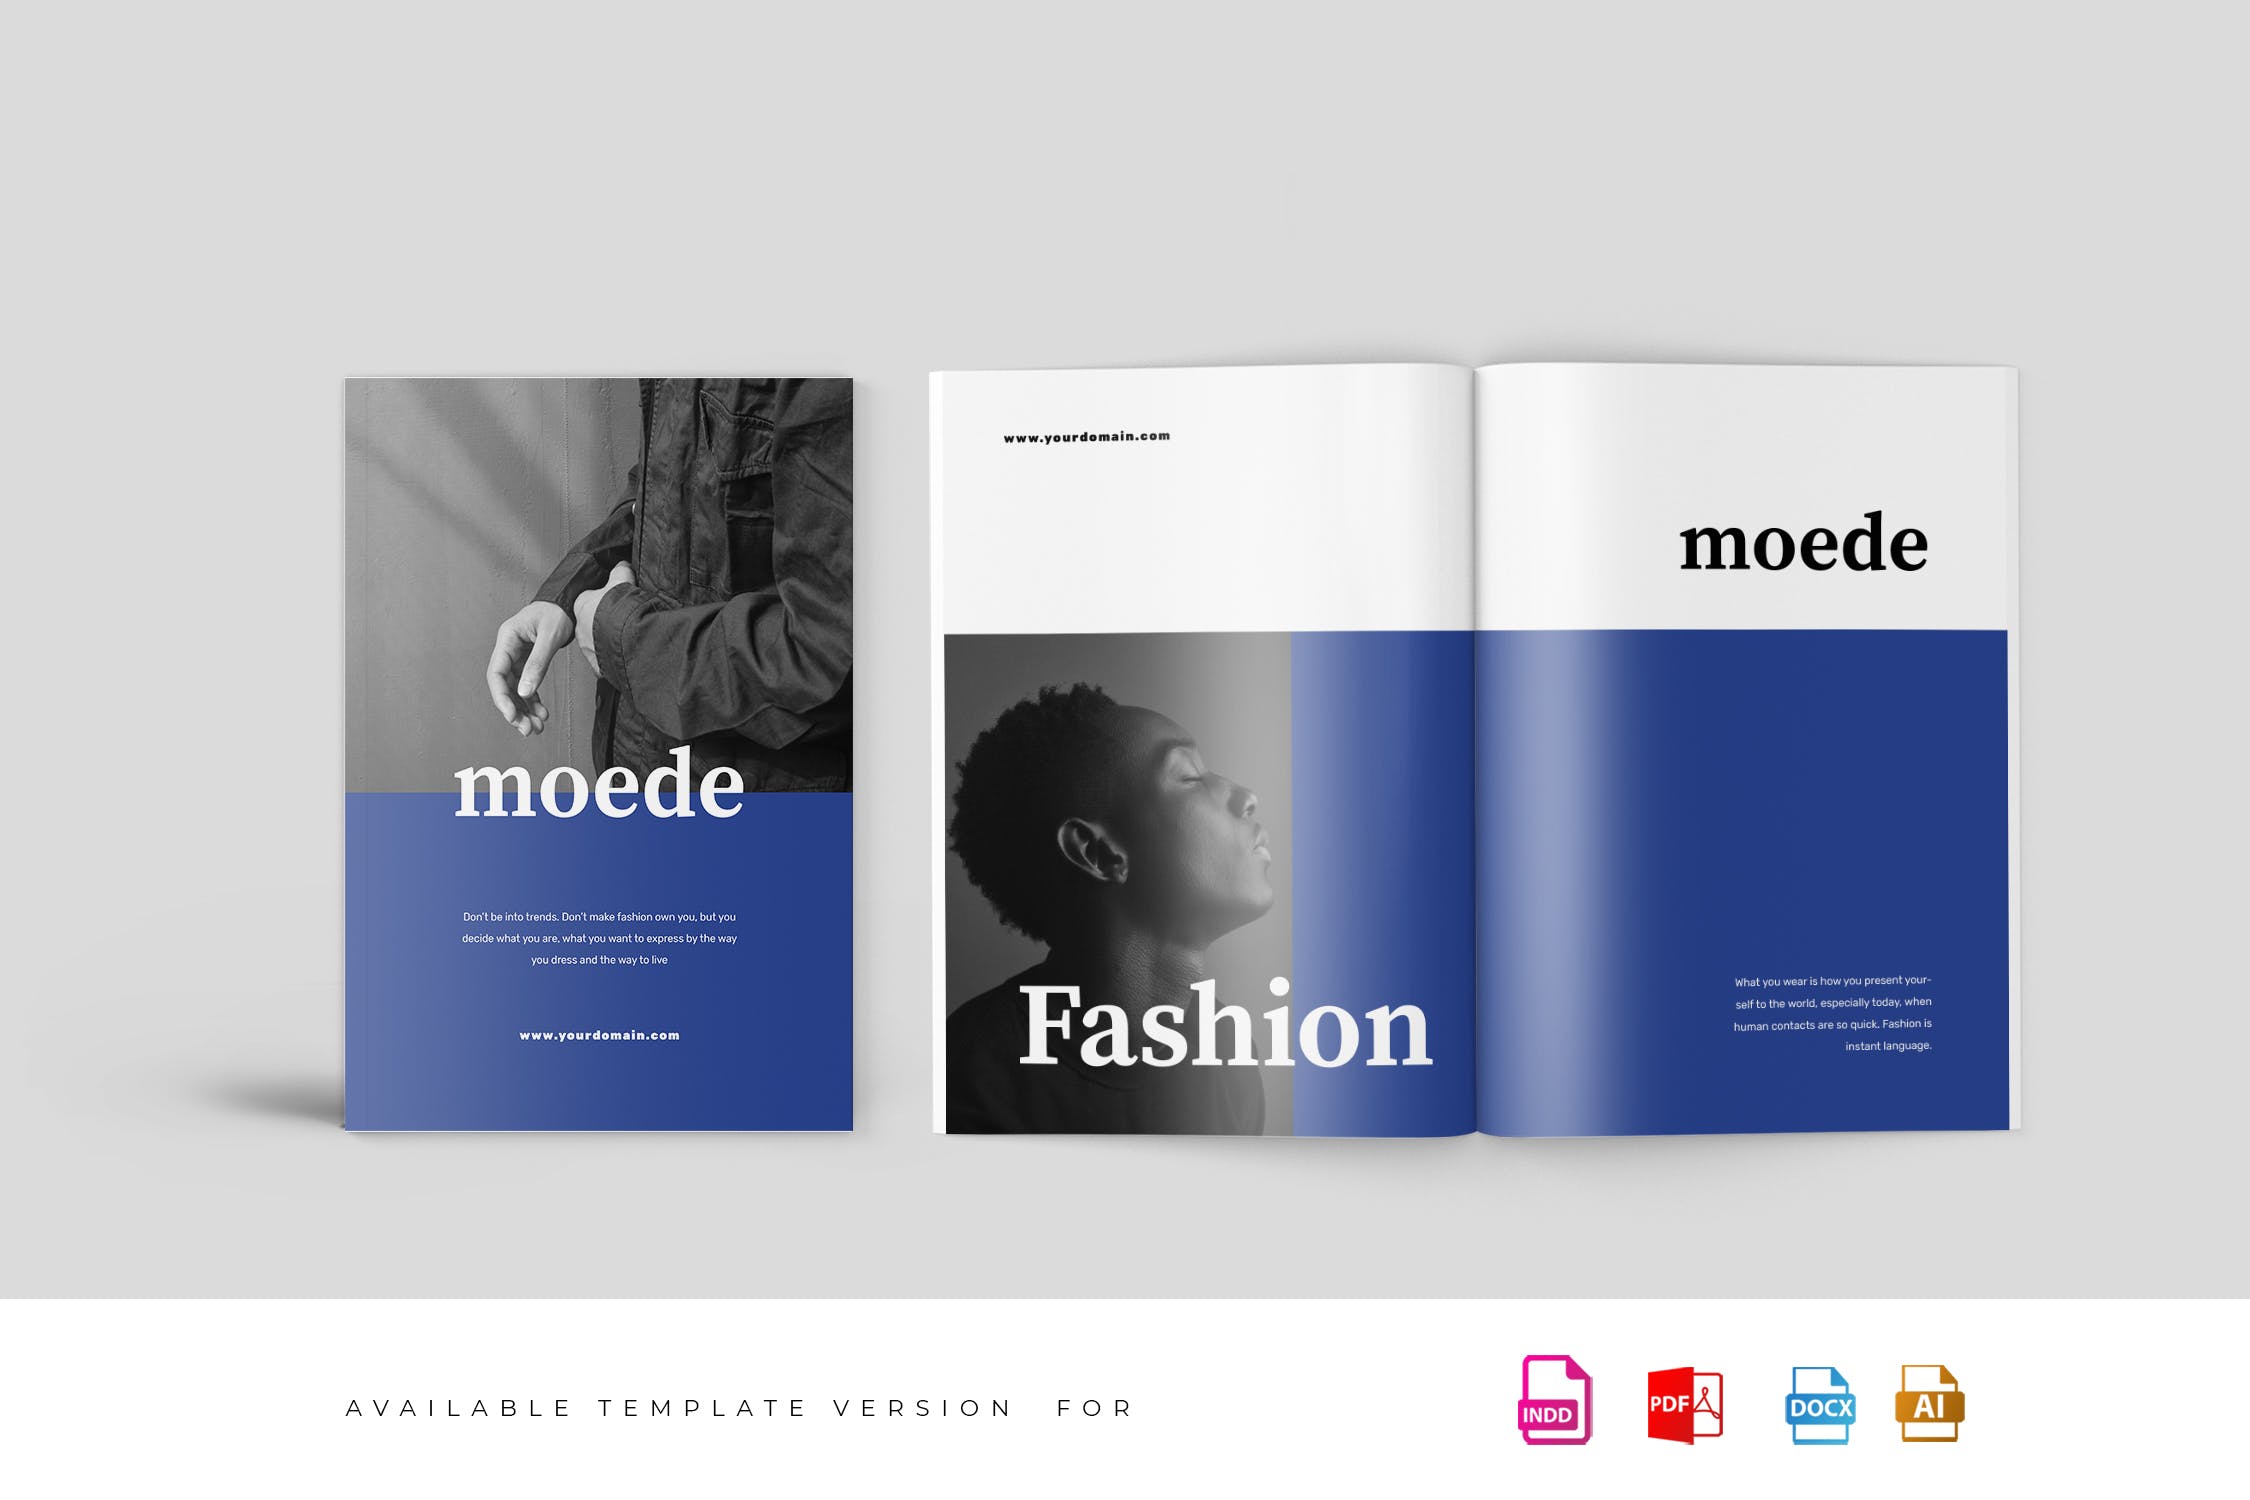 高端时尚服装品牌产品蚂蚁素材精选目录设计模板 Moede Fashion Lookbook Catalogue插图(1)